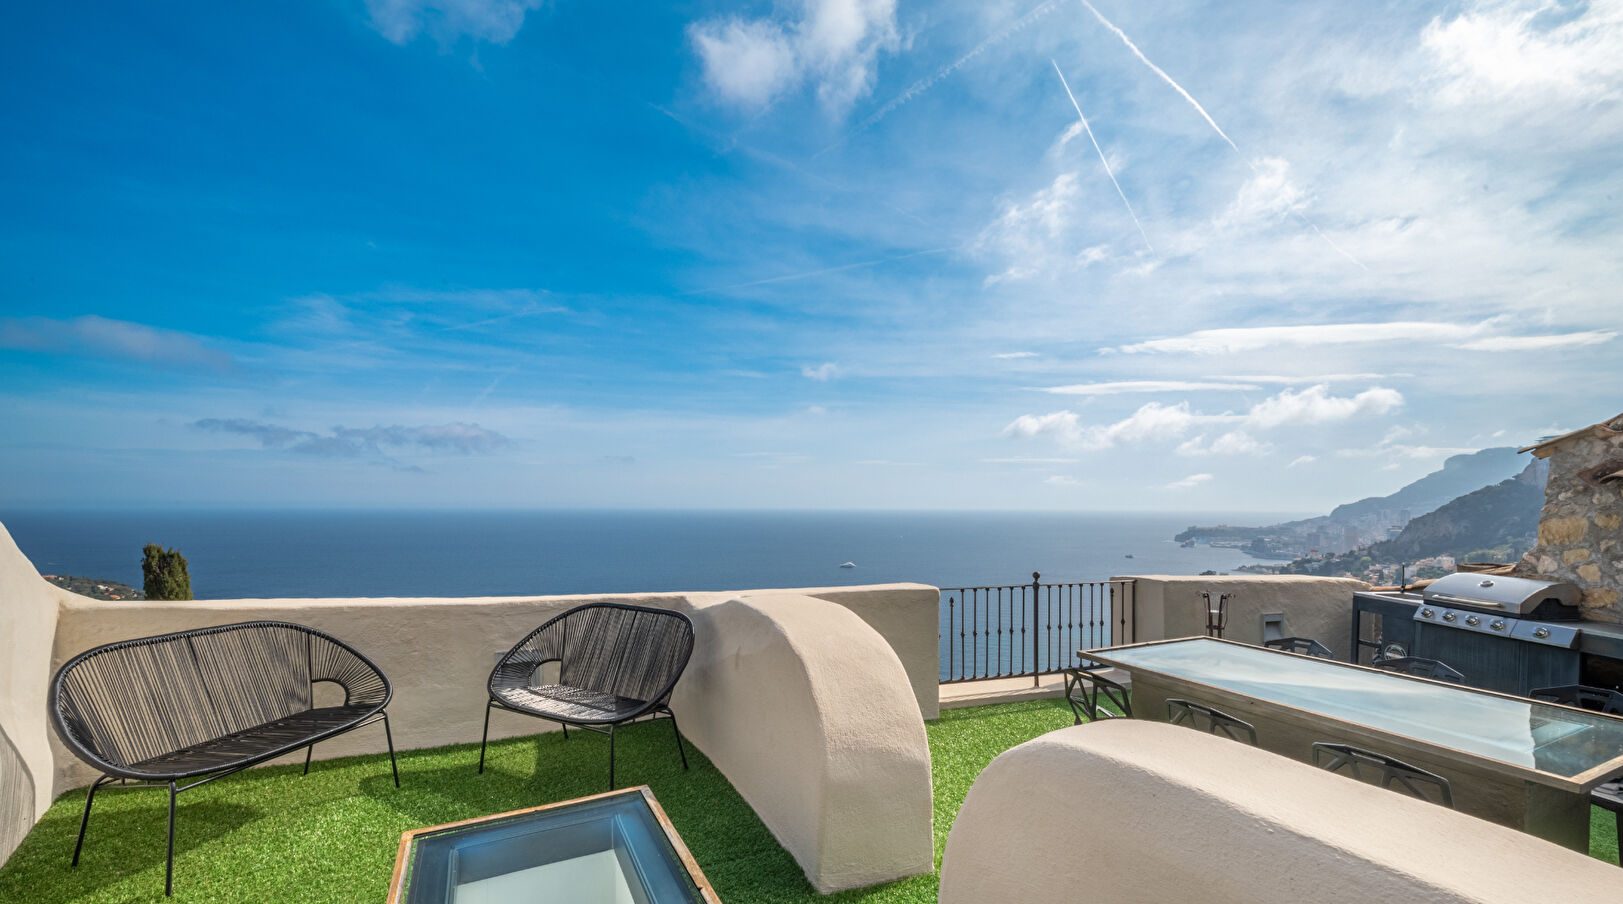 Vue exceptionnelle sur la mer et maison à l’allure troglodyte : le duo gagnant de cette demeure vendue à Roquebrune-Cap-Martin